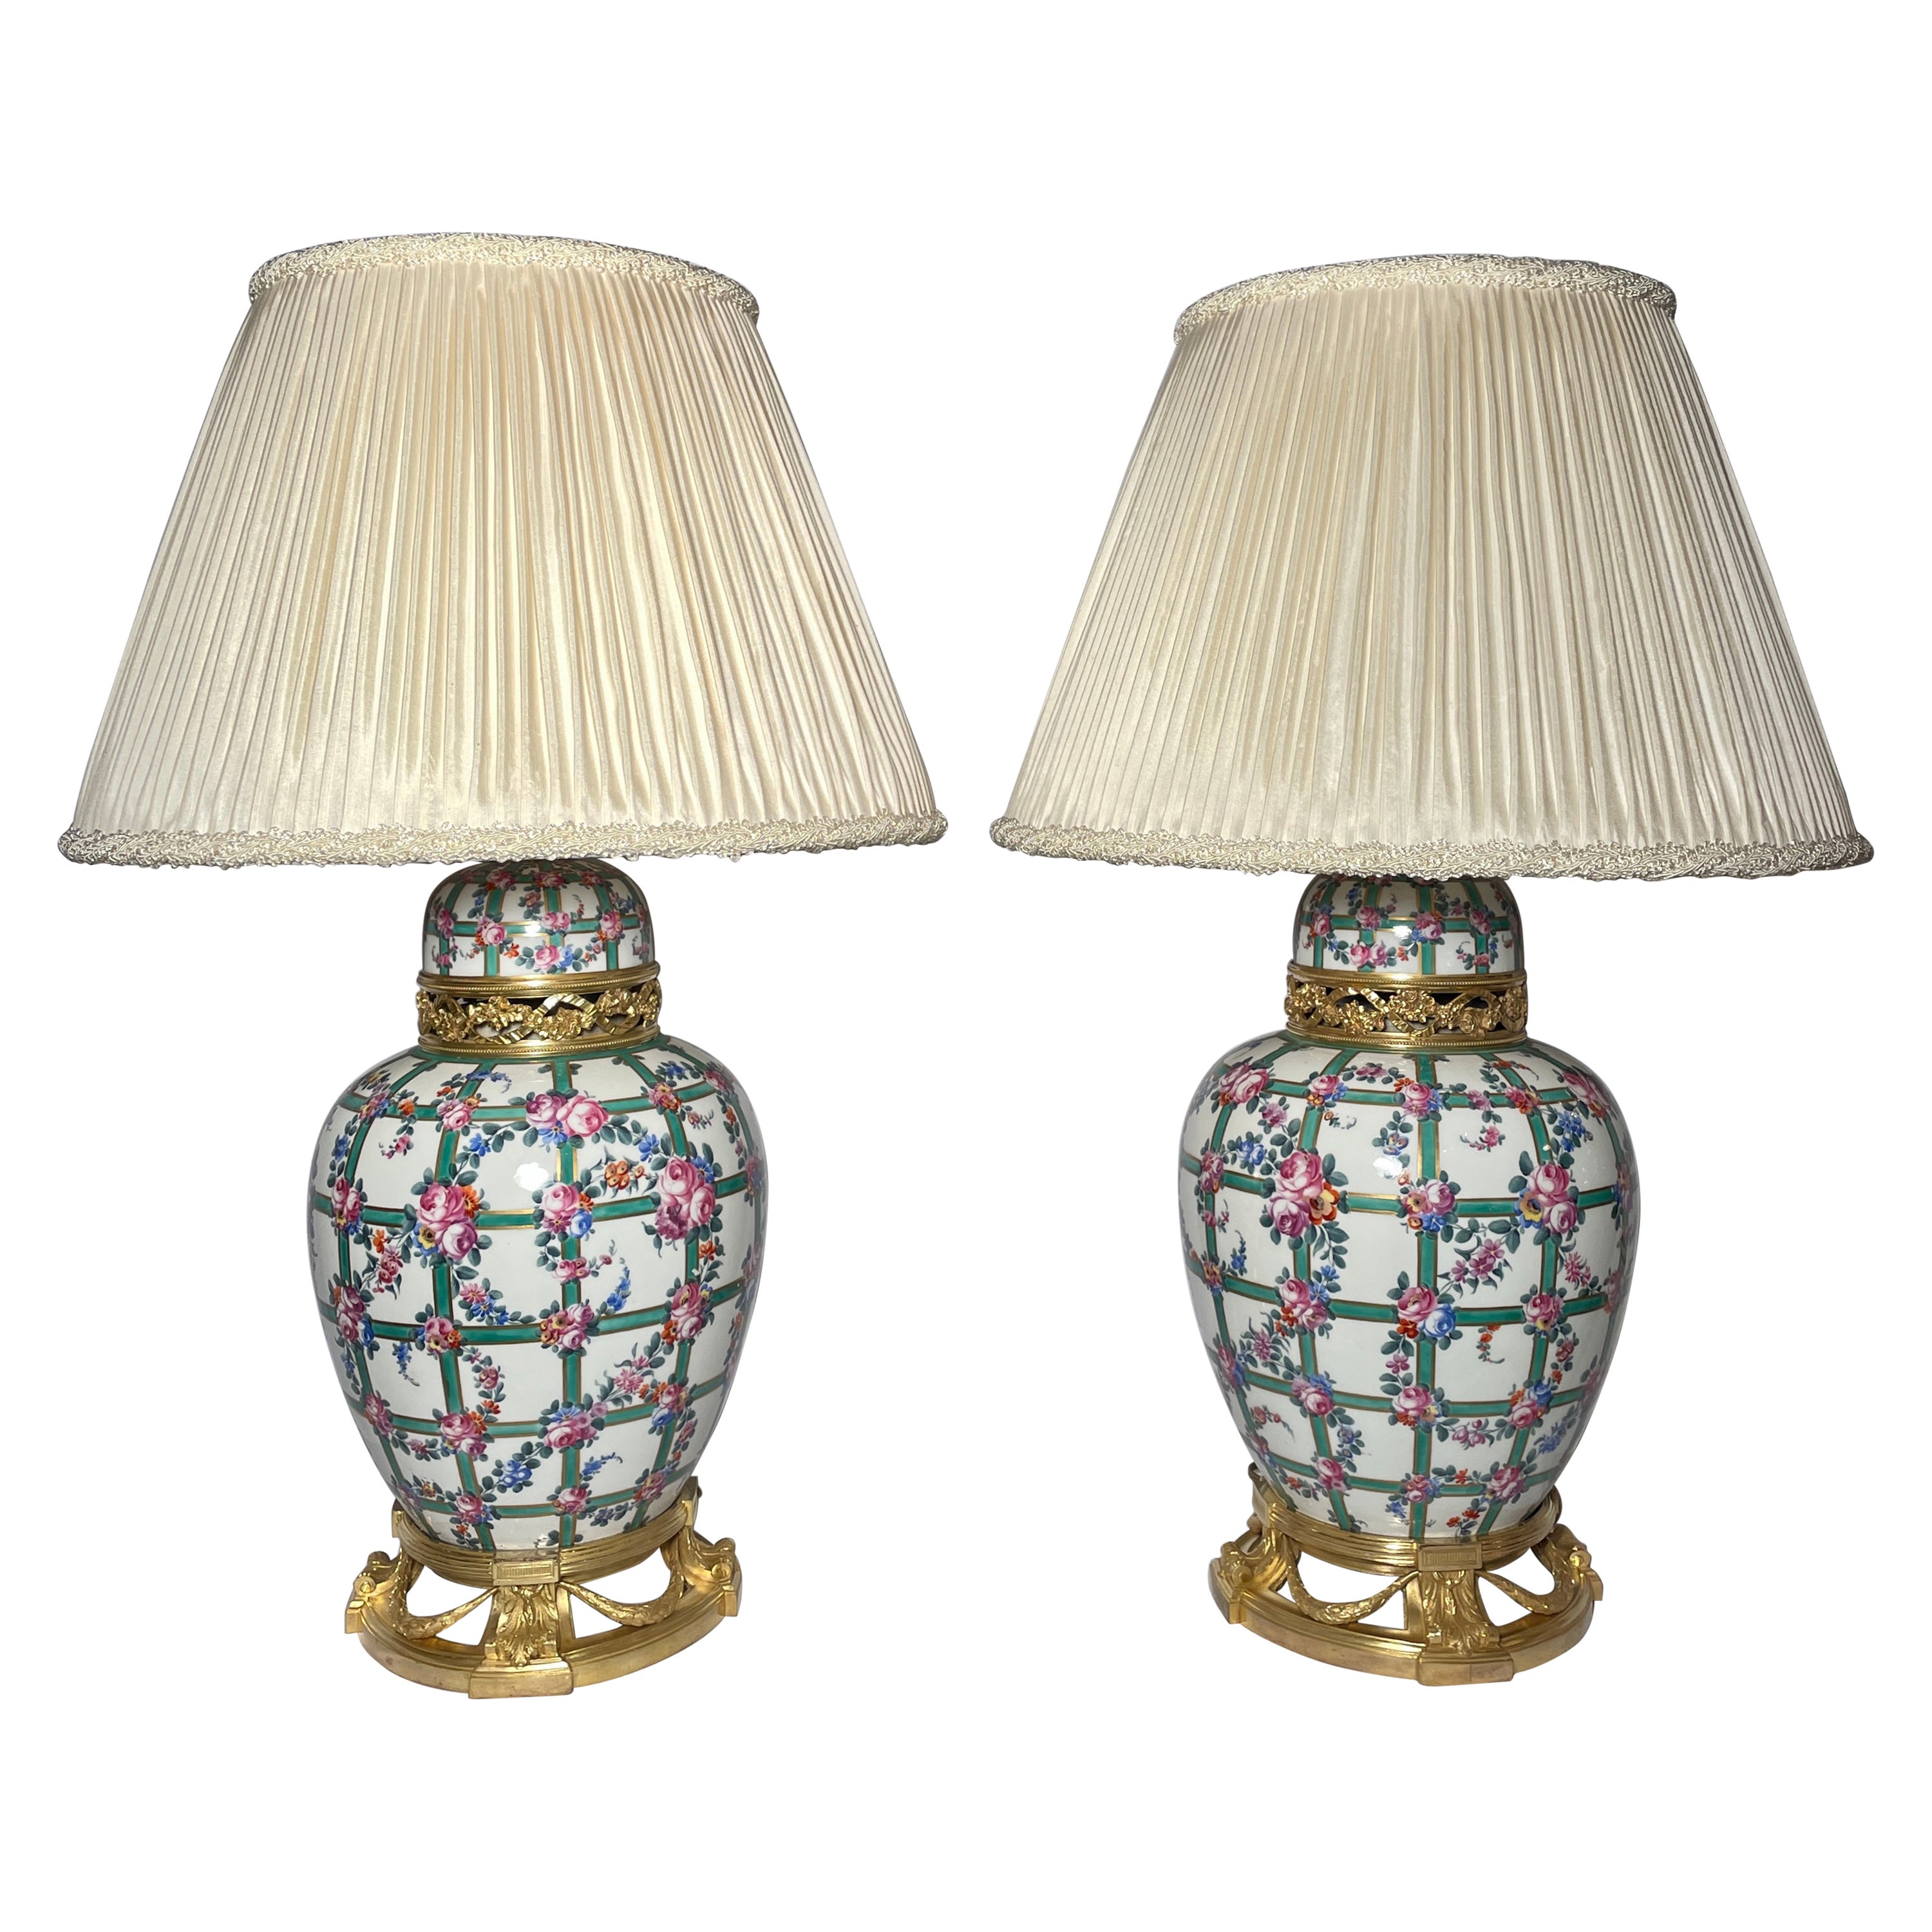 Paire de lampes anciennes en porcelaine et ormolu de la Belle Époque française, vers 1880.